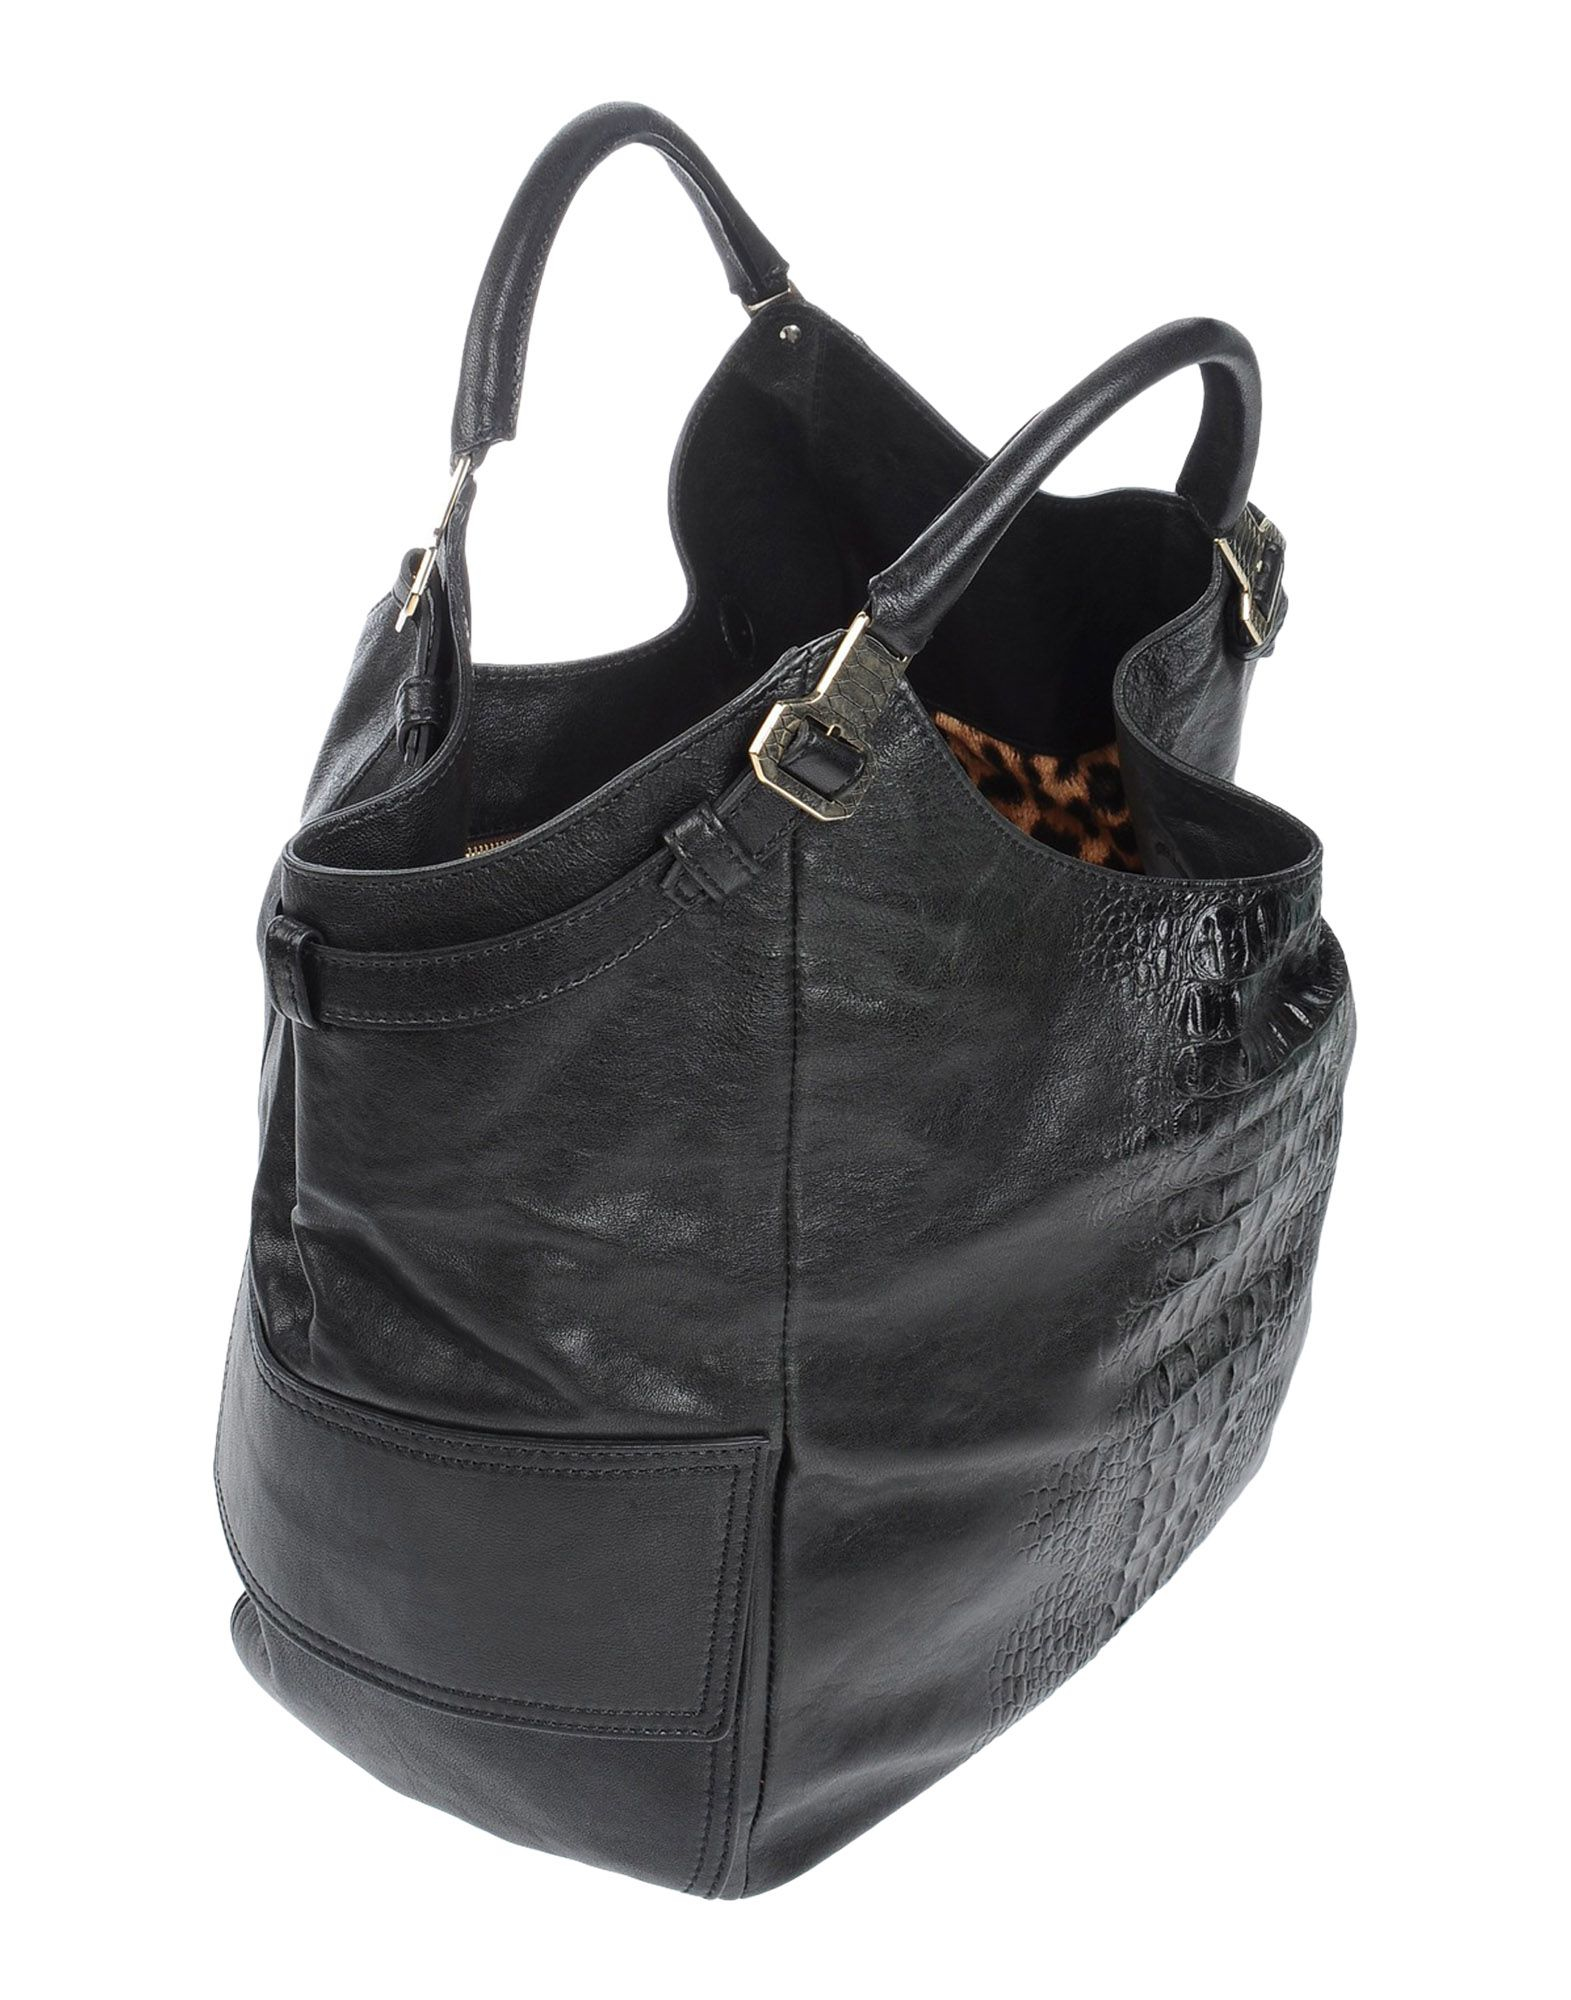 Lyst - Roberto cavalli Handbag in Black